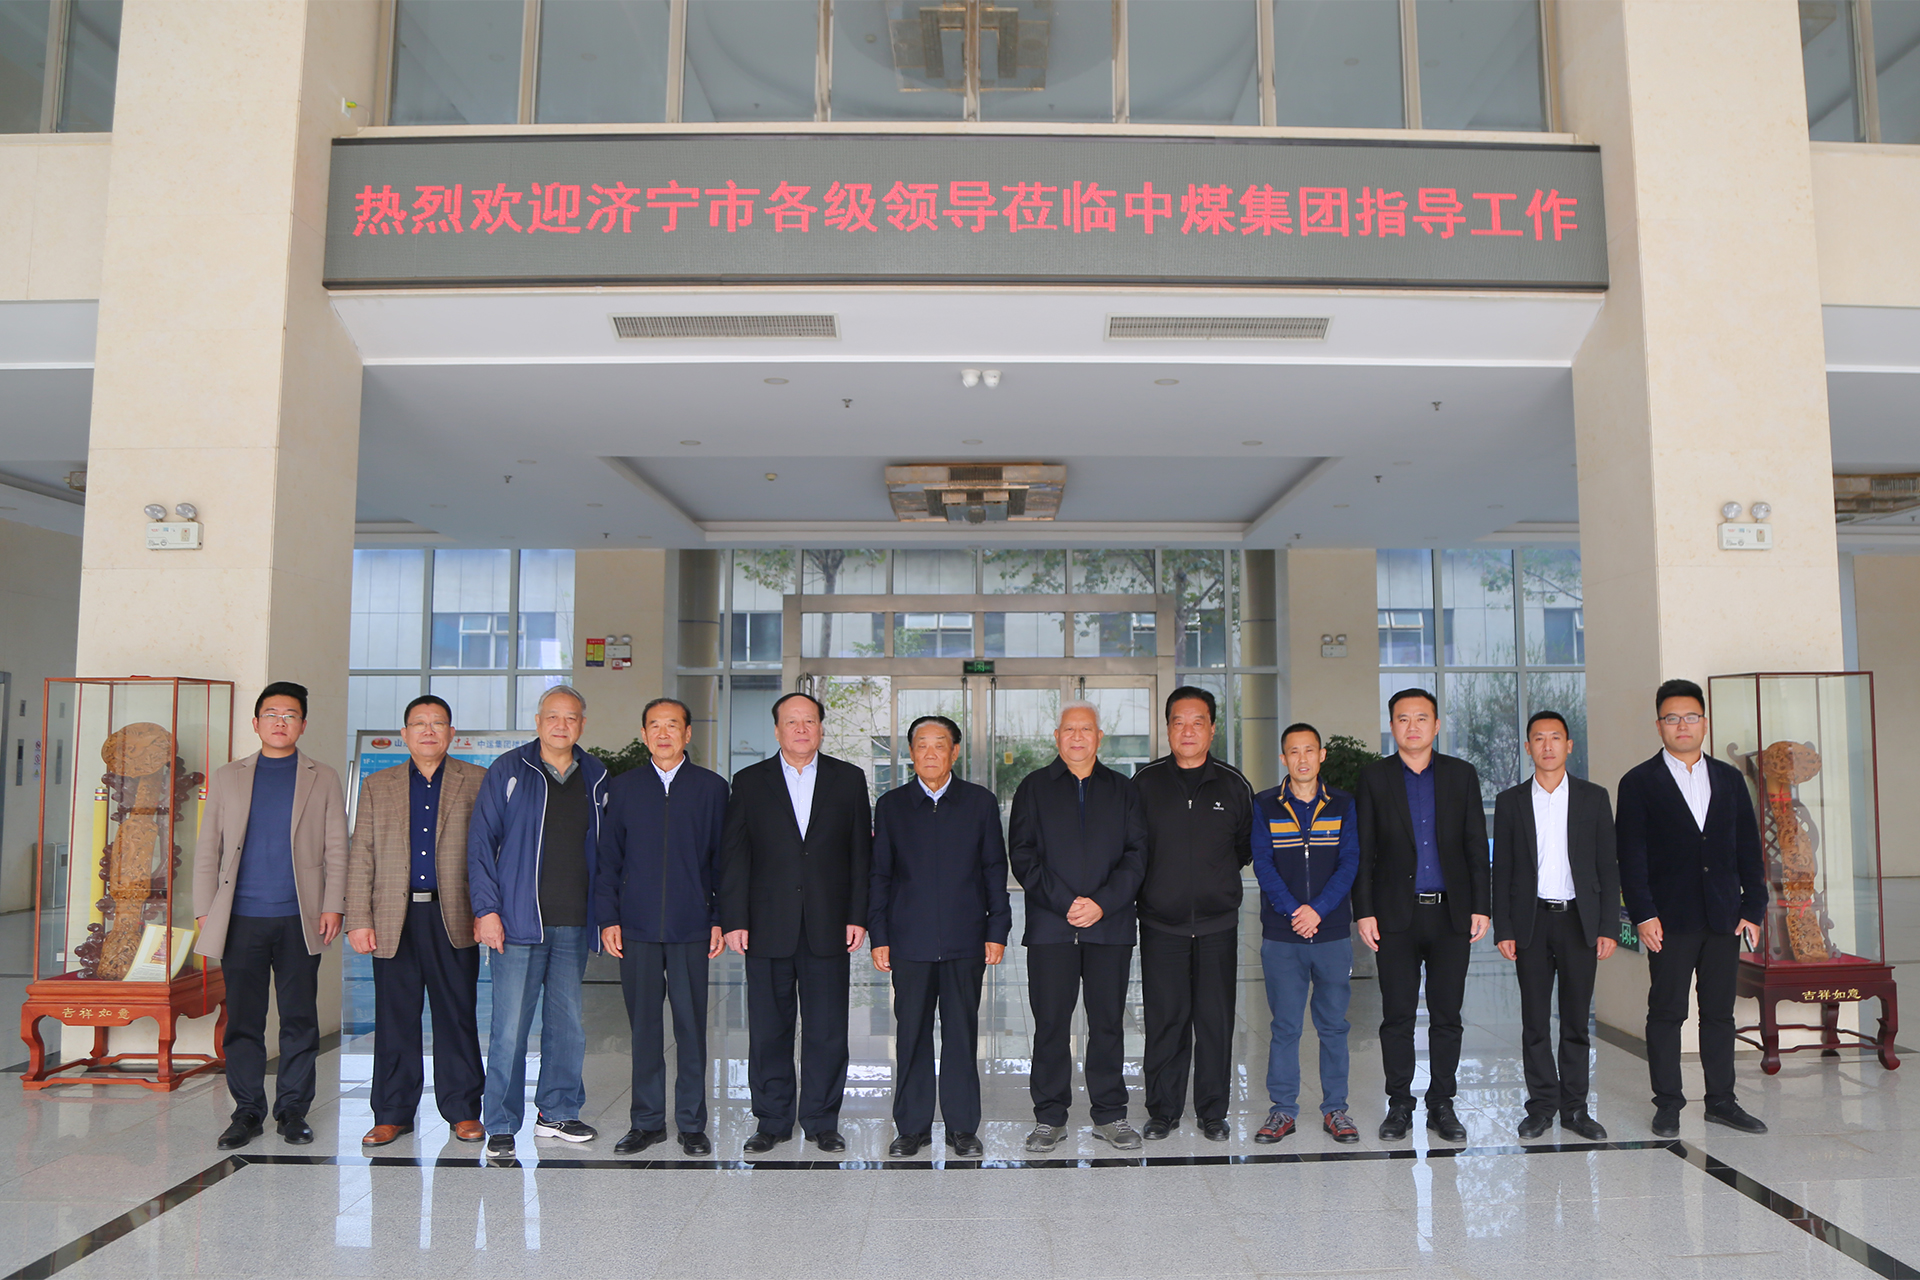 热烈欢迎济宁市人民政府原副市长杨茂山领导一行莅临中煤集团参观指导